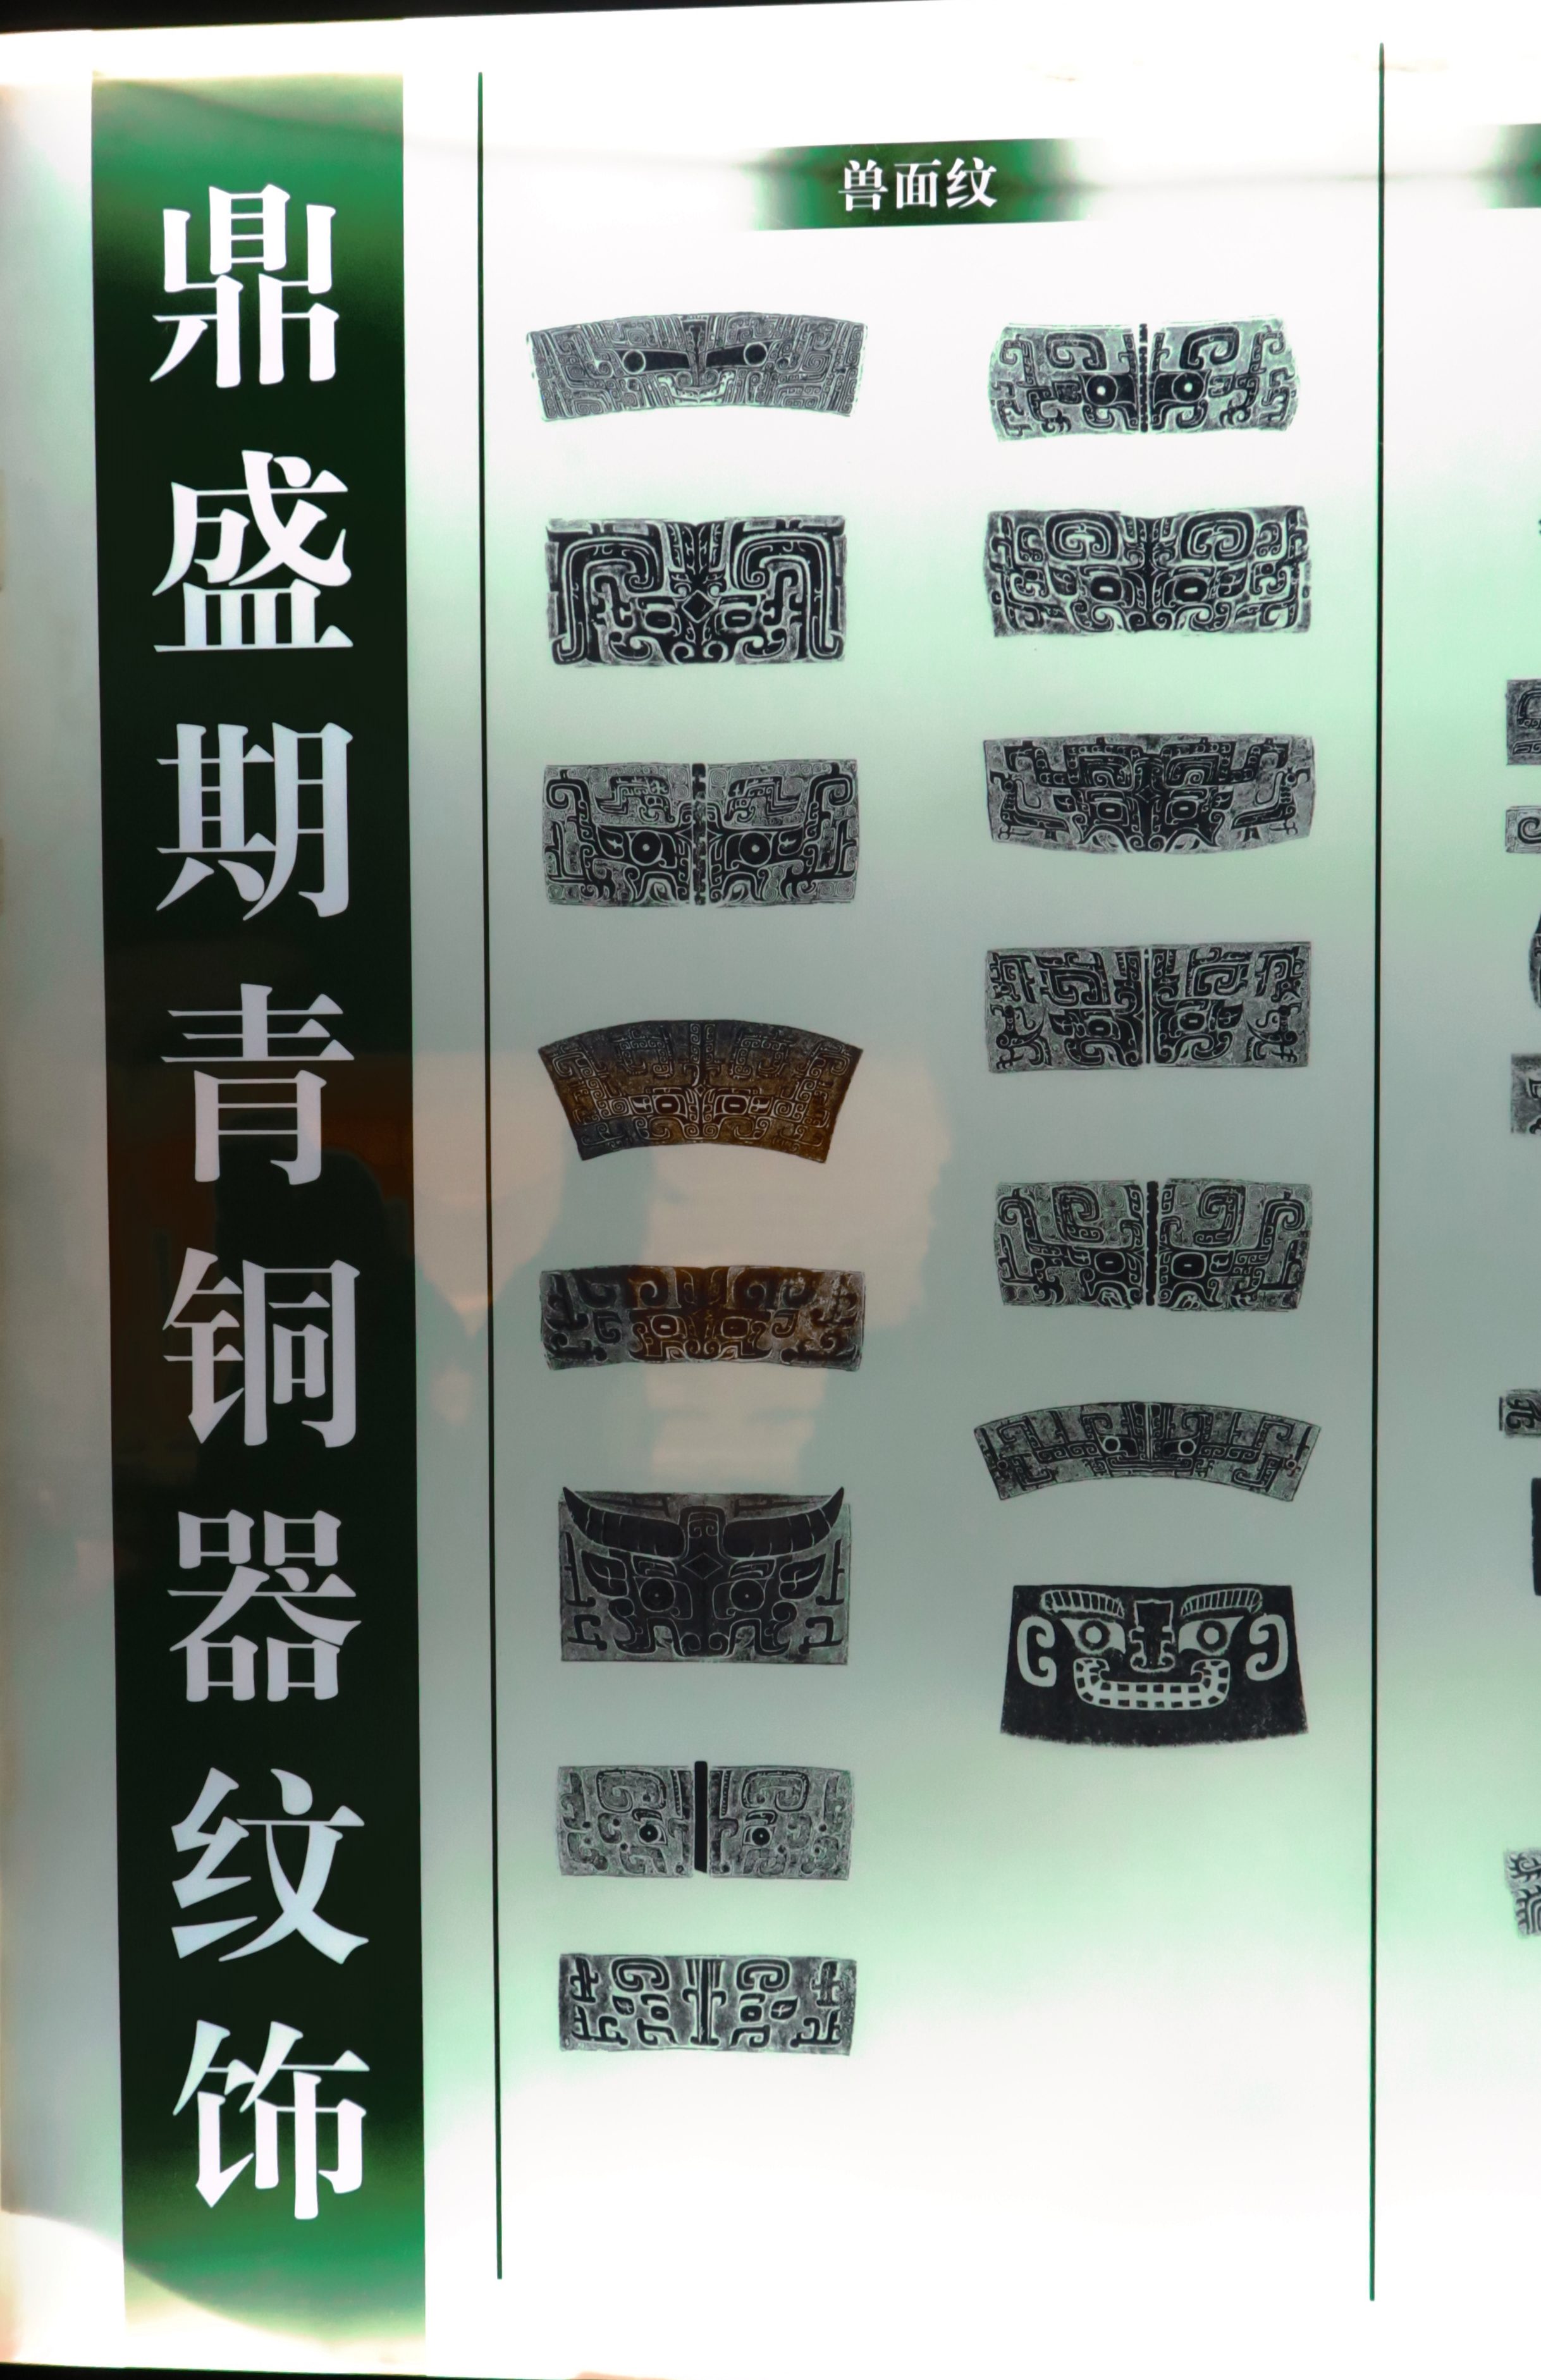 上海博物馆参观上海博物馆　鼎盛时期青铜器纹饰